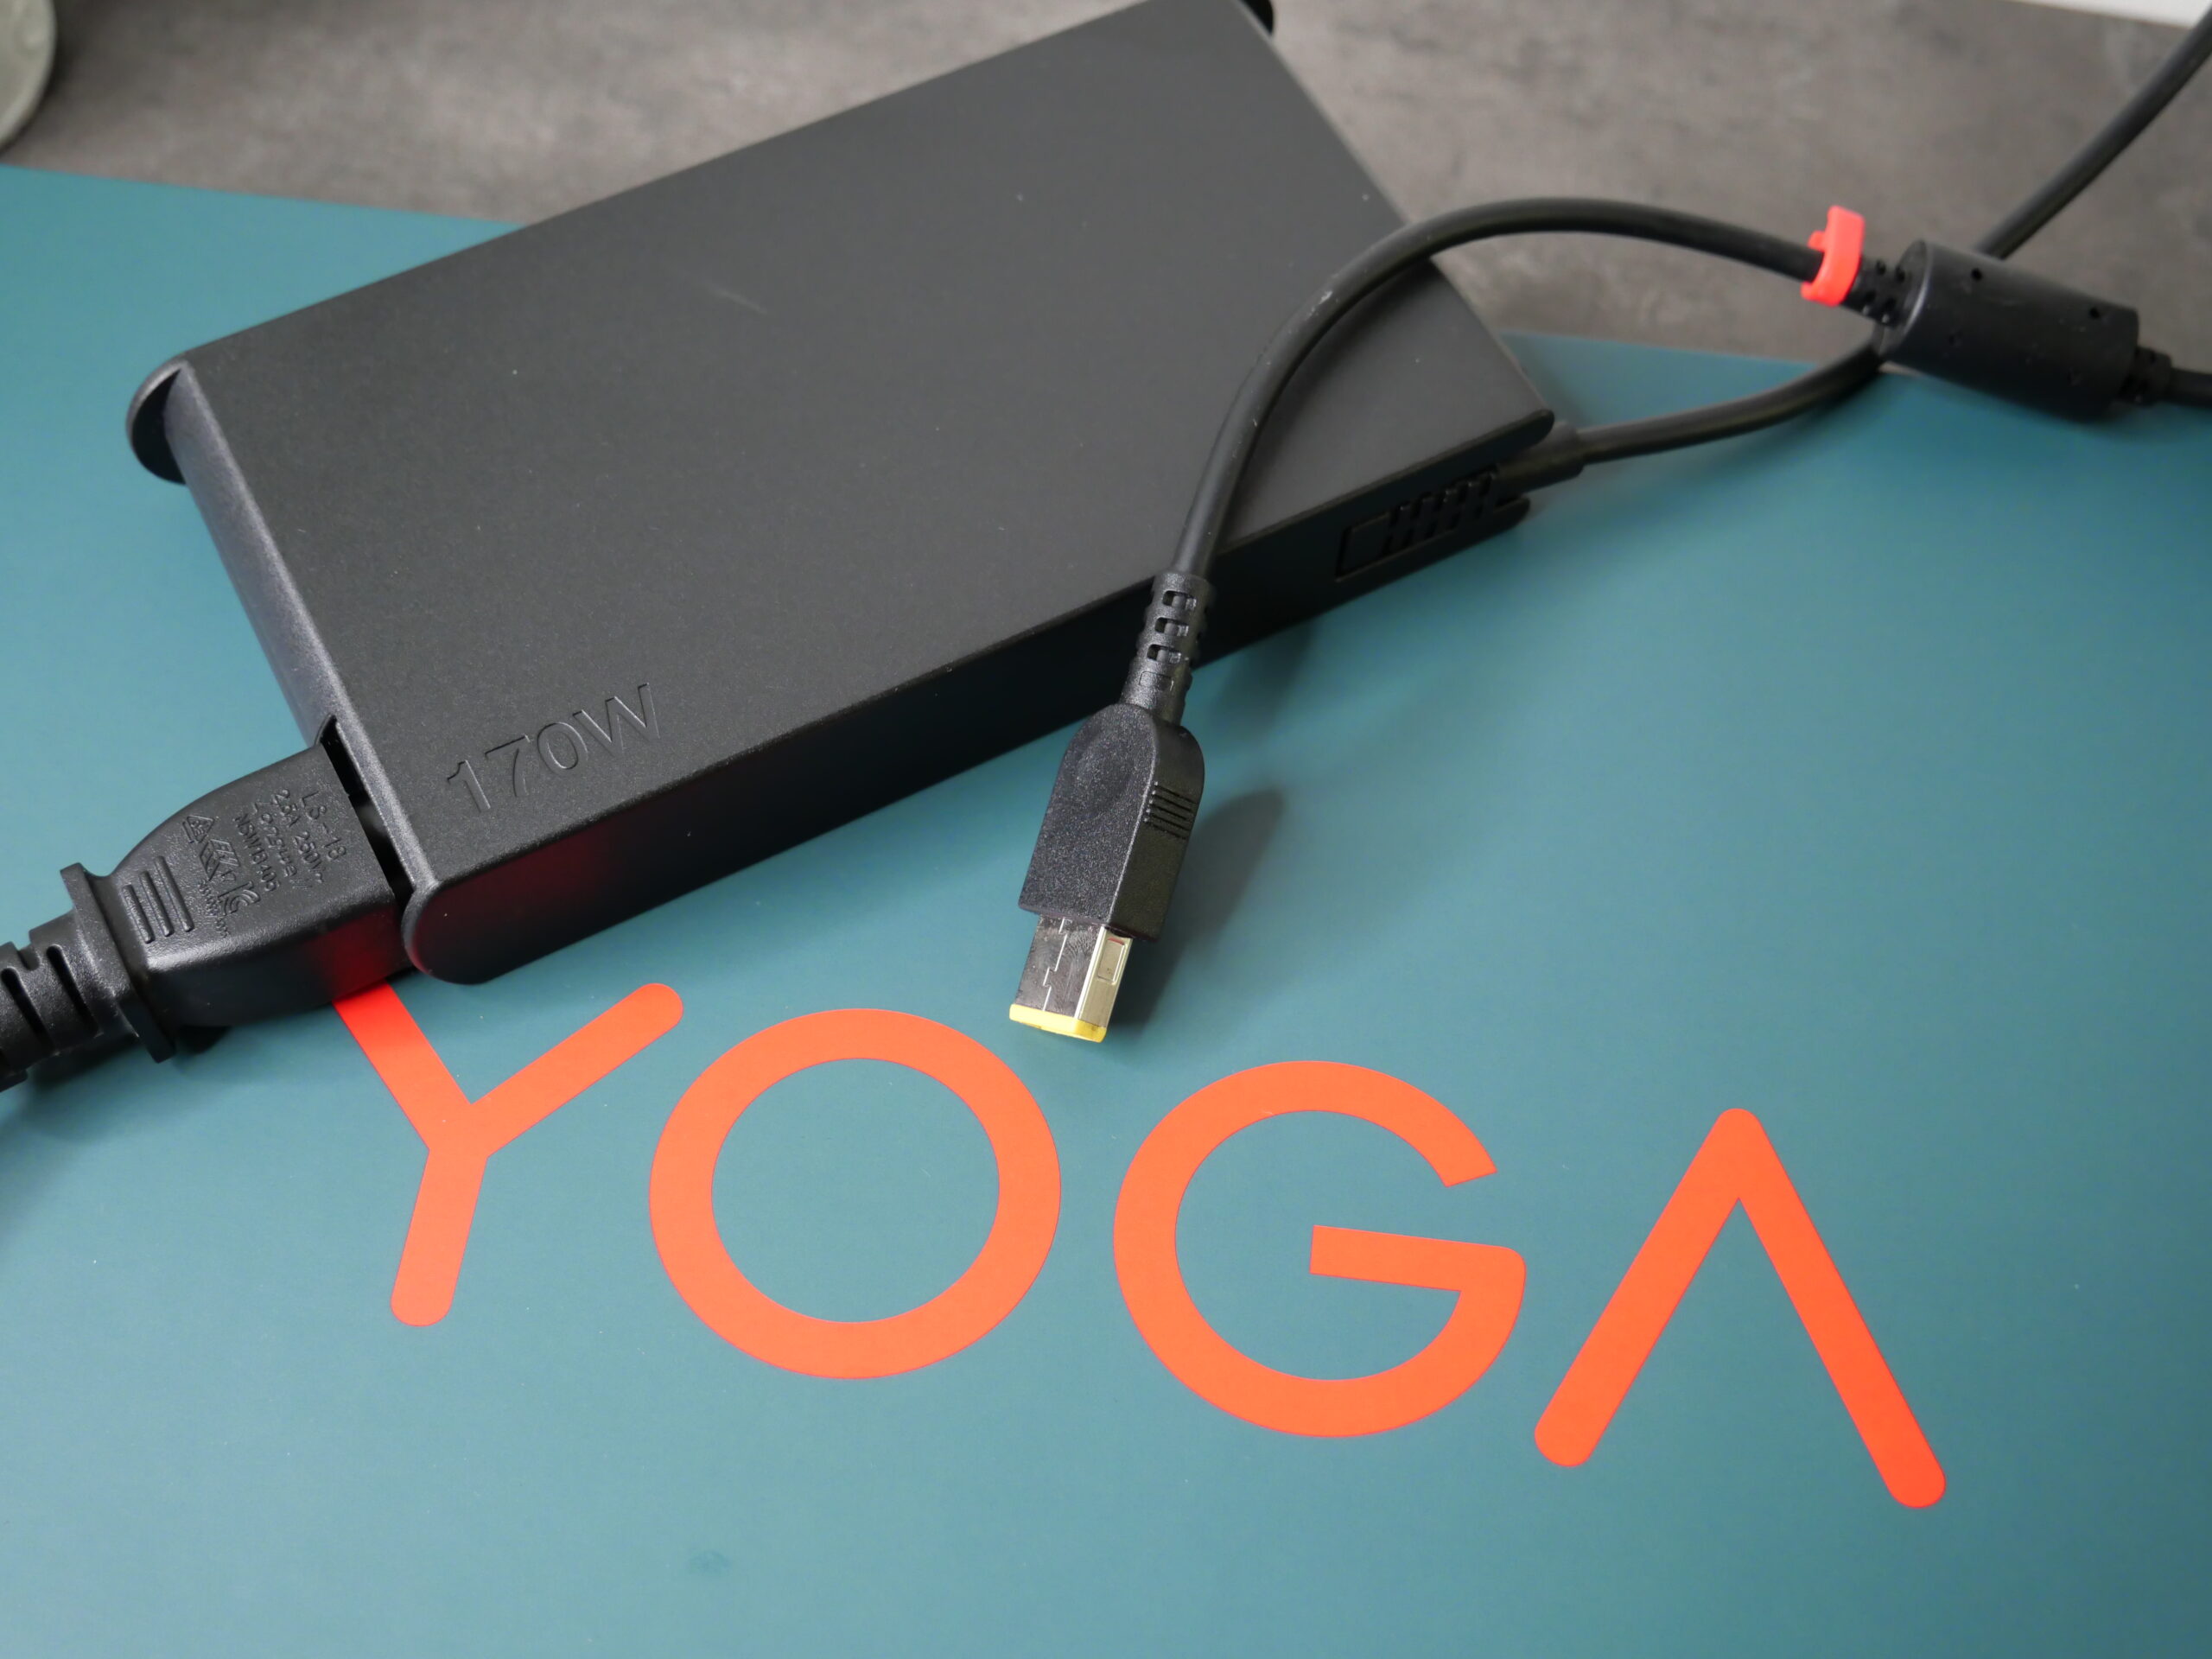 Yoga Pro 9i Gen 8 (16″ Intel)